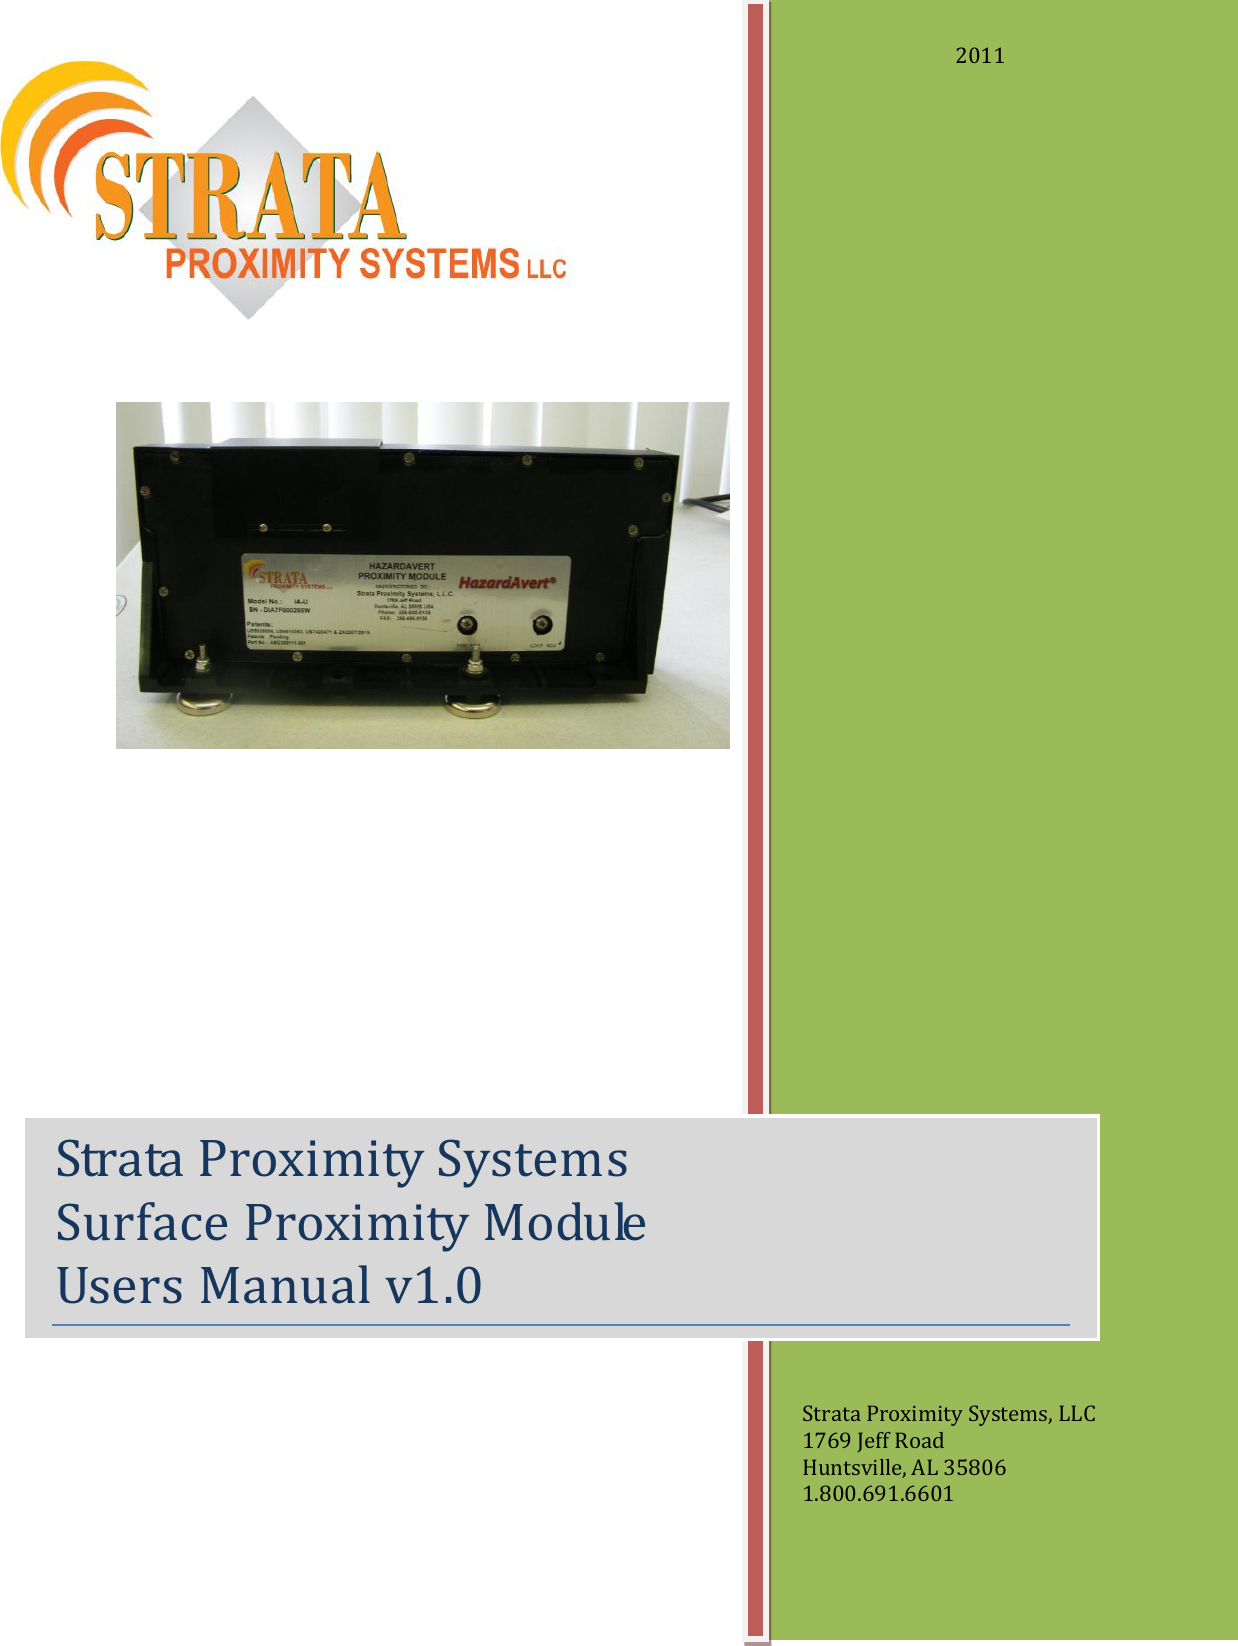                                   Strata Proximity Systems Surface Proximity Module   Users Manual v1.0   2011 Strata Proximity Systems, LLC 1769 Jeff Road Huntsville, AL 35806 1.800.691.6601 